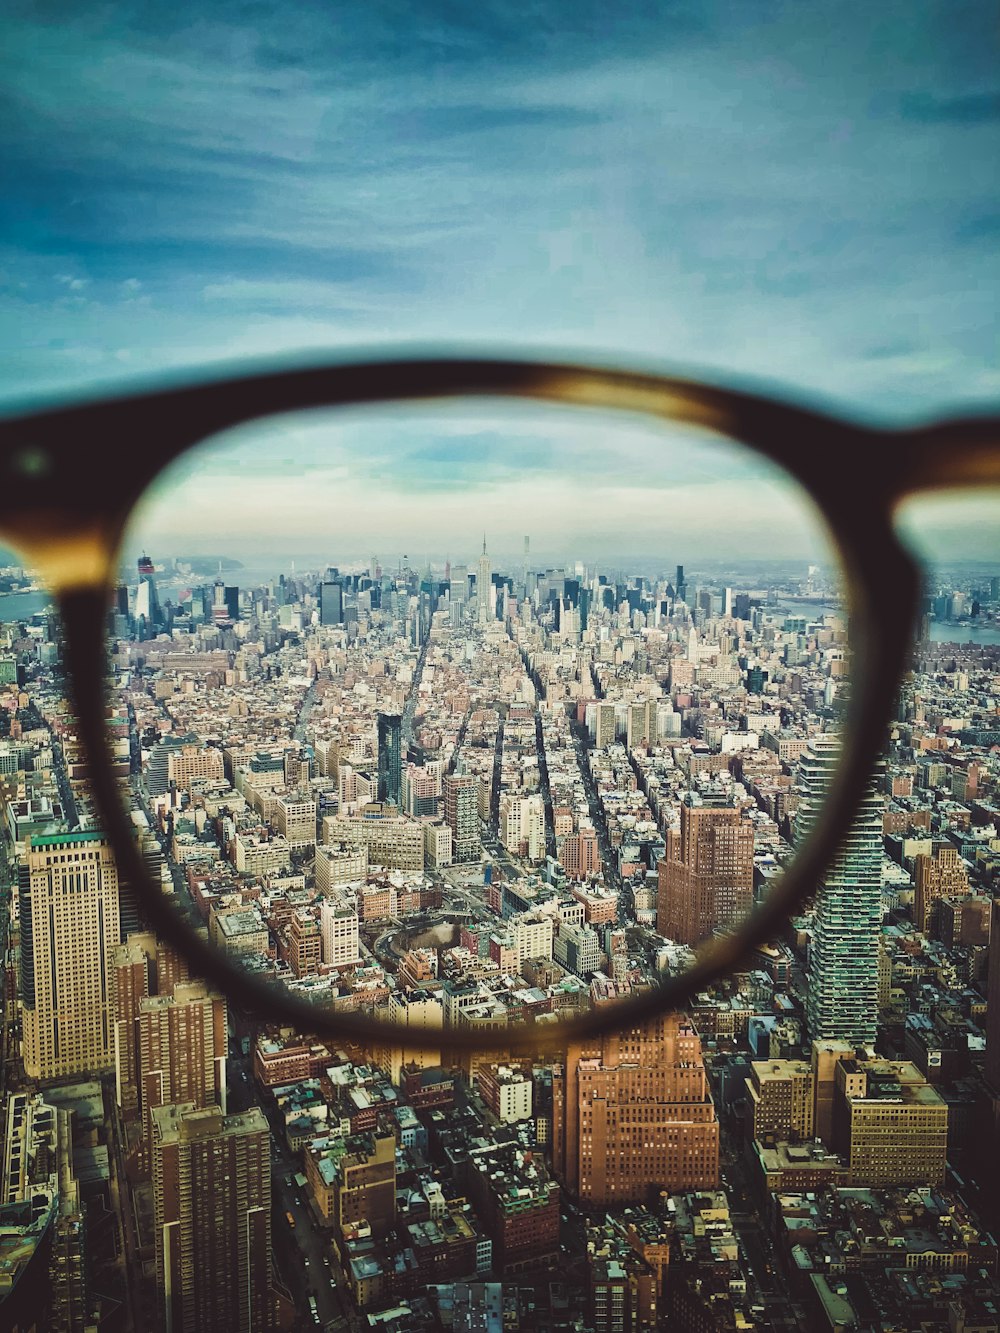 city buildings on eyeglasses view